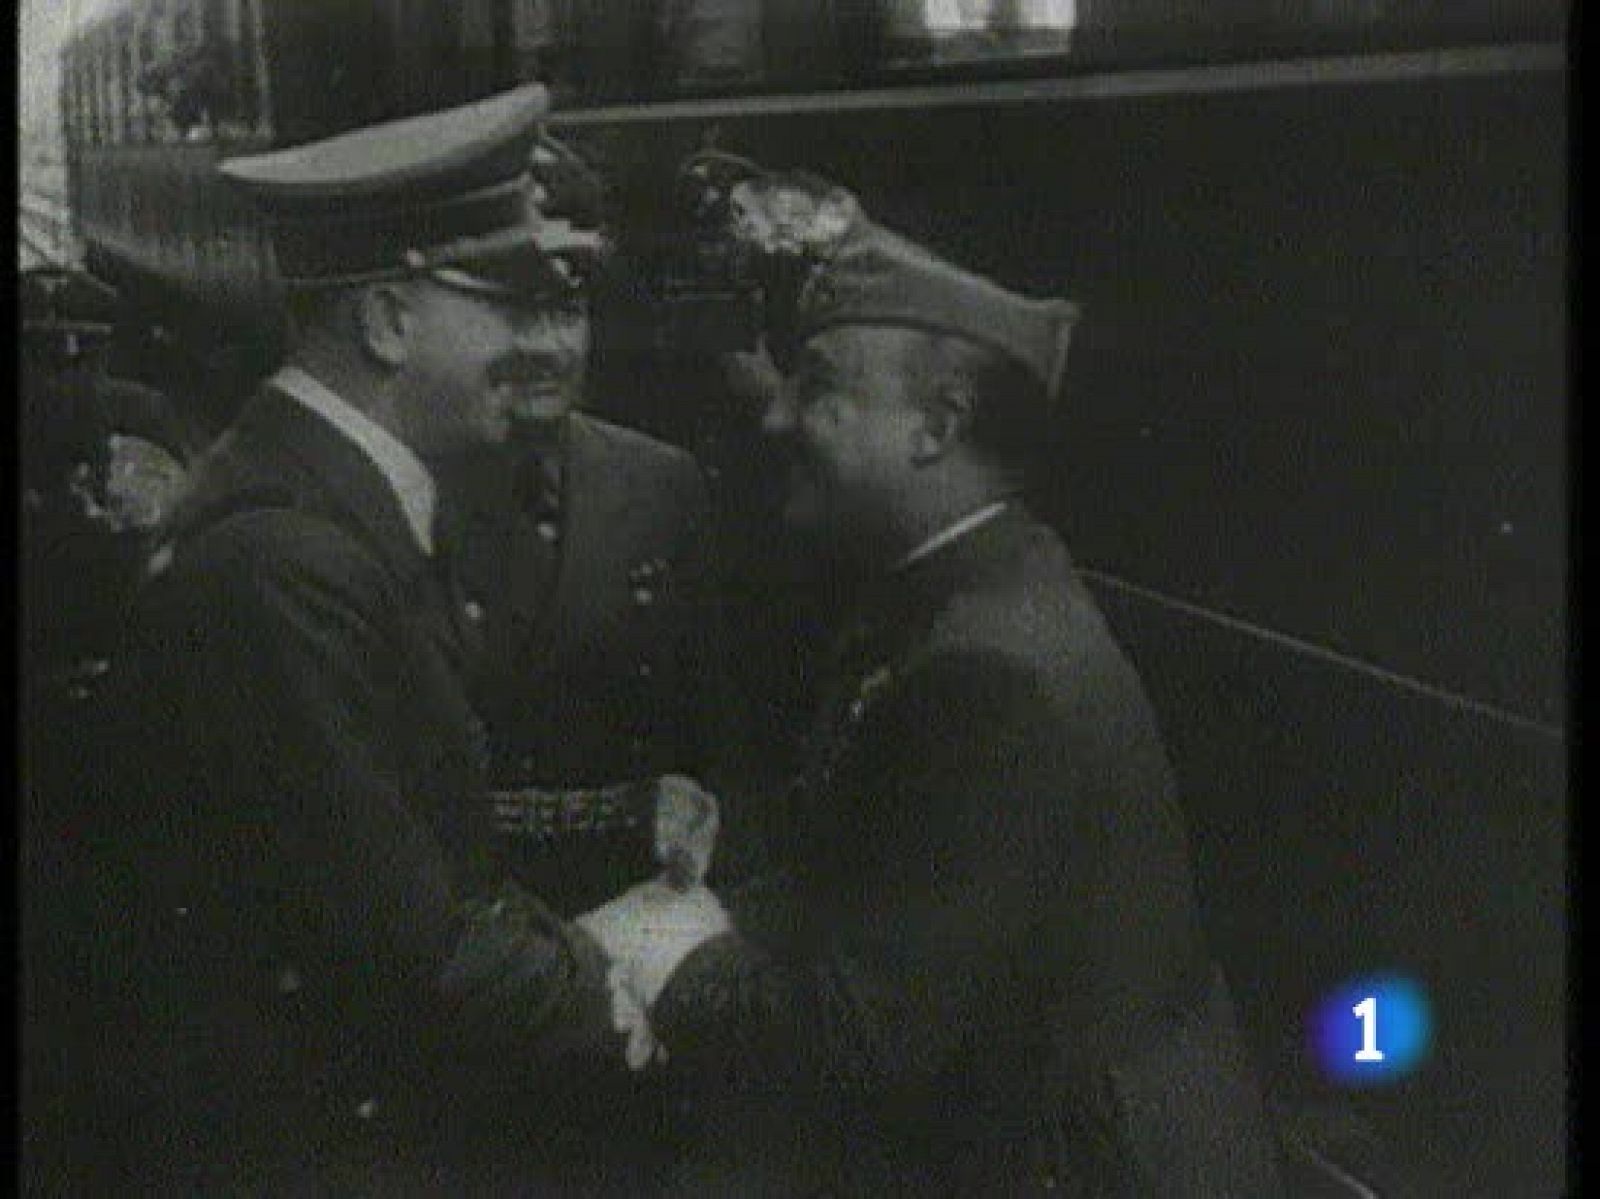 Reporteros del telediario - La España de Franco también fue refugio de oficiales nazis